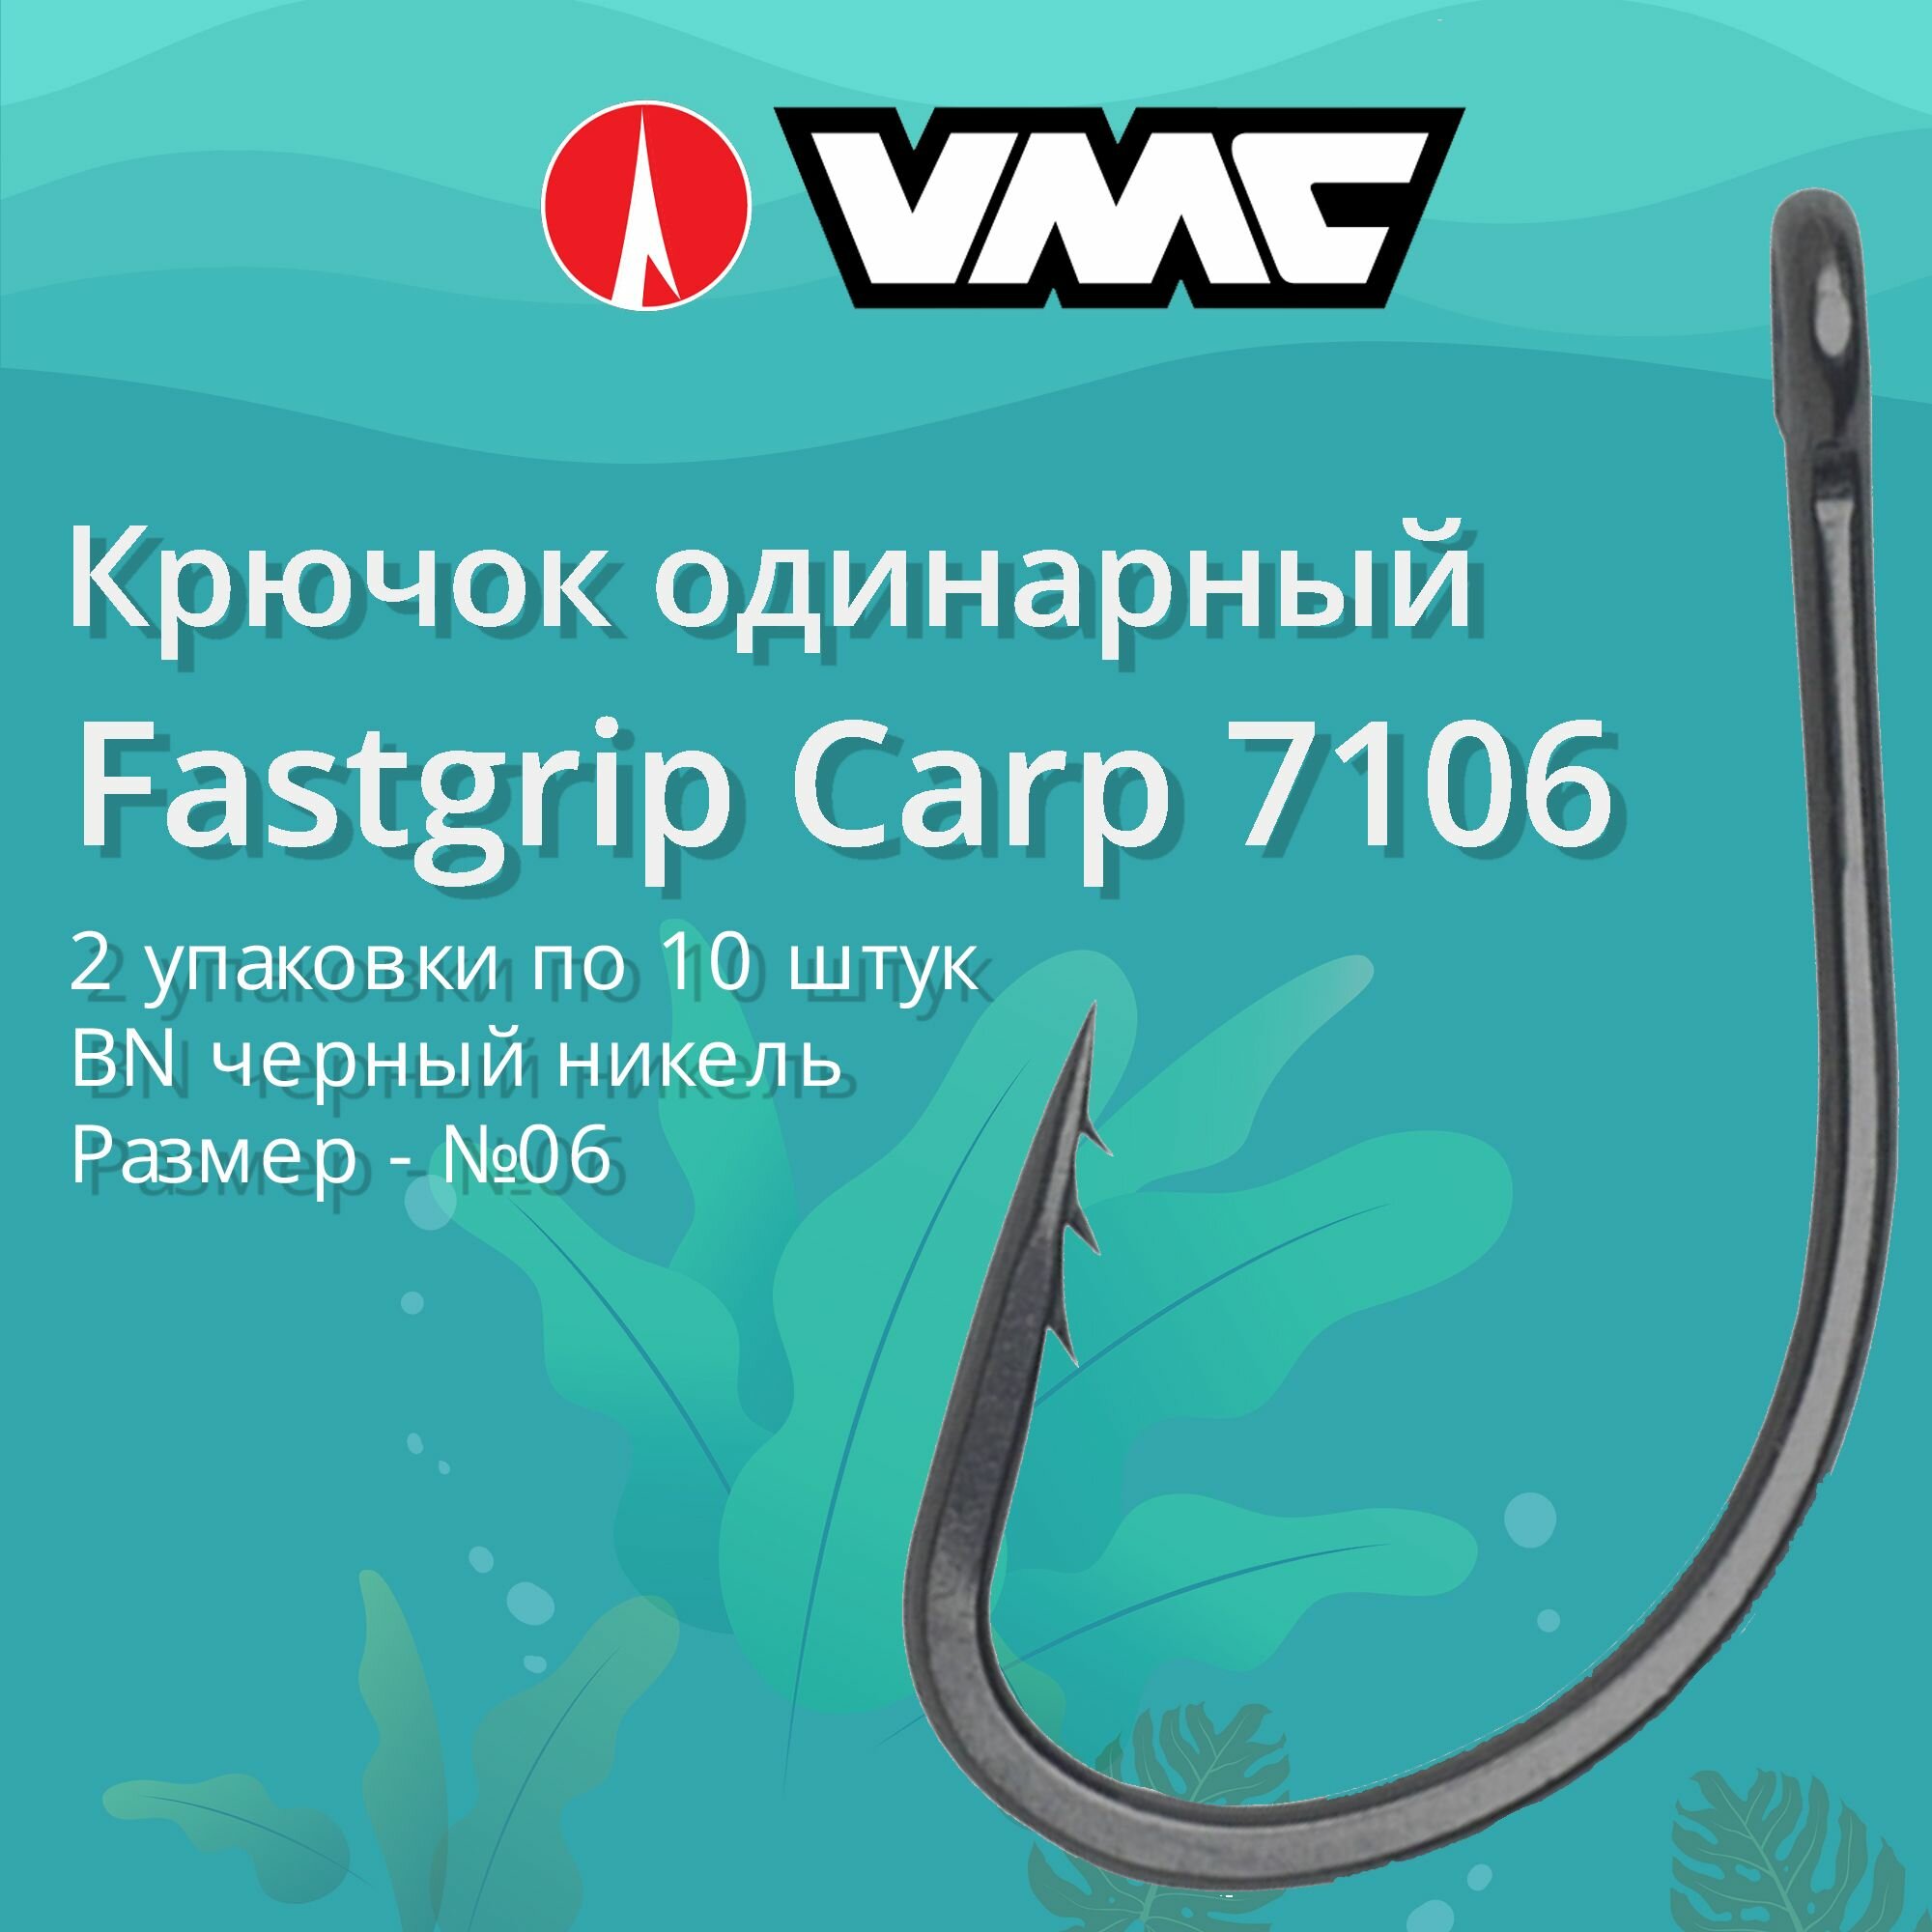 Крючки для рыбалки (одинарный) VMC Fastgrip Carp 7106 BN (черн. никель) №06, 2 упаковки по 10 штук